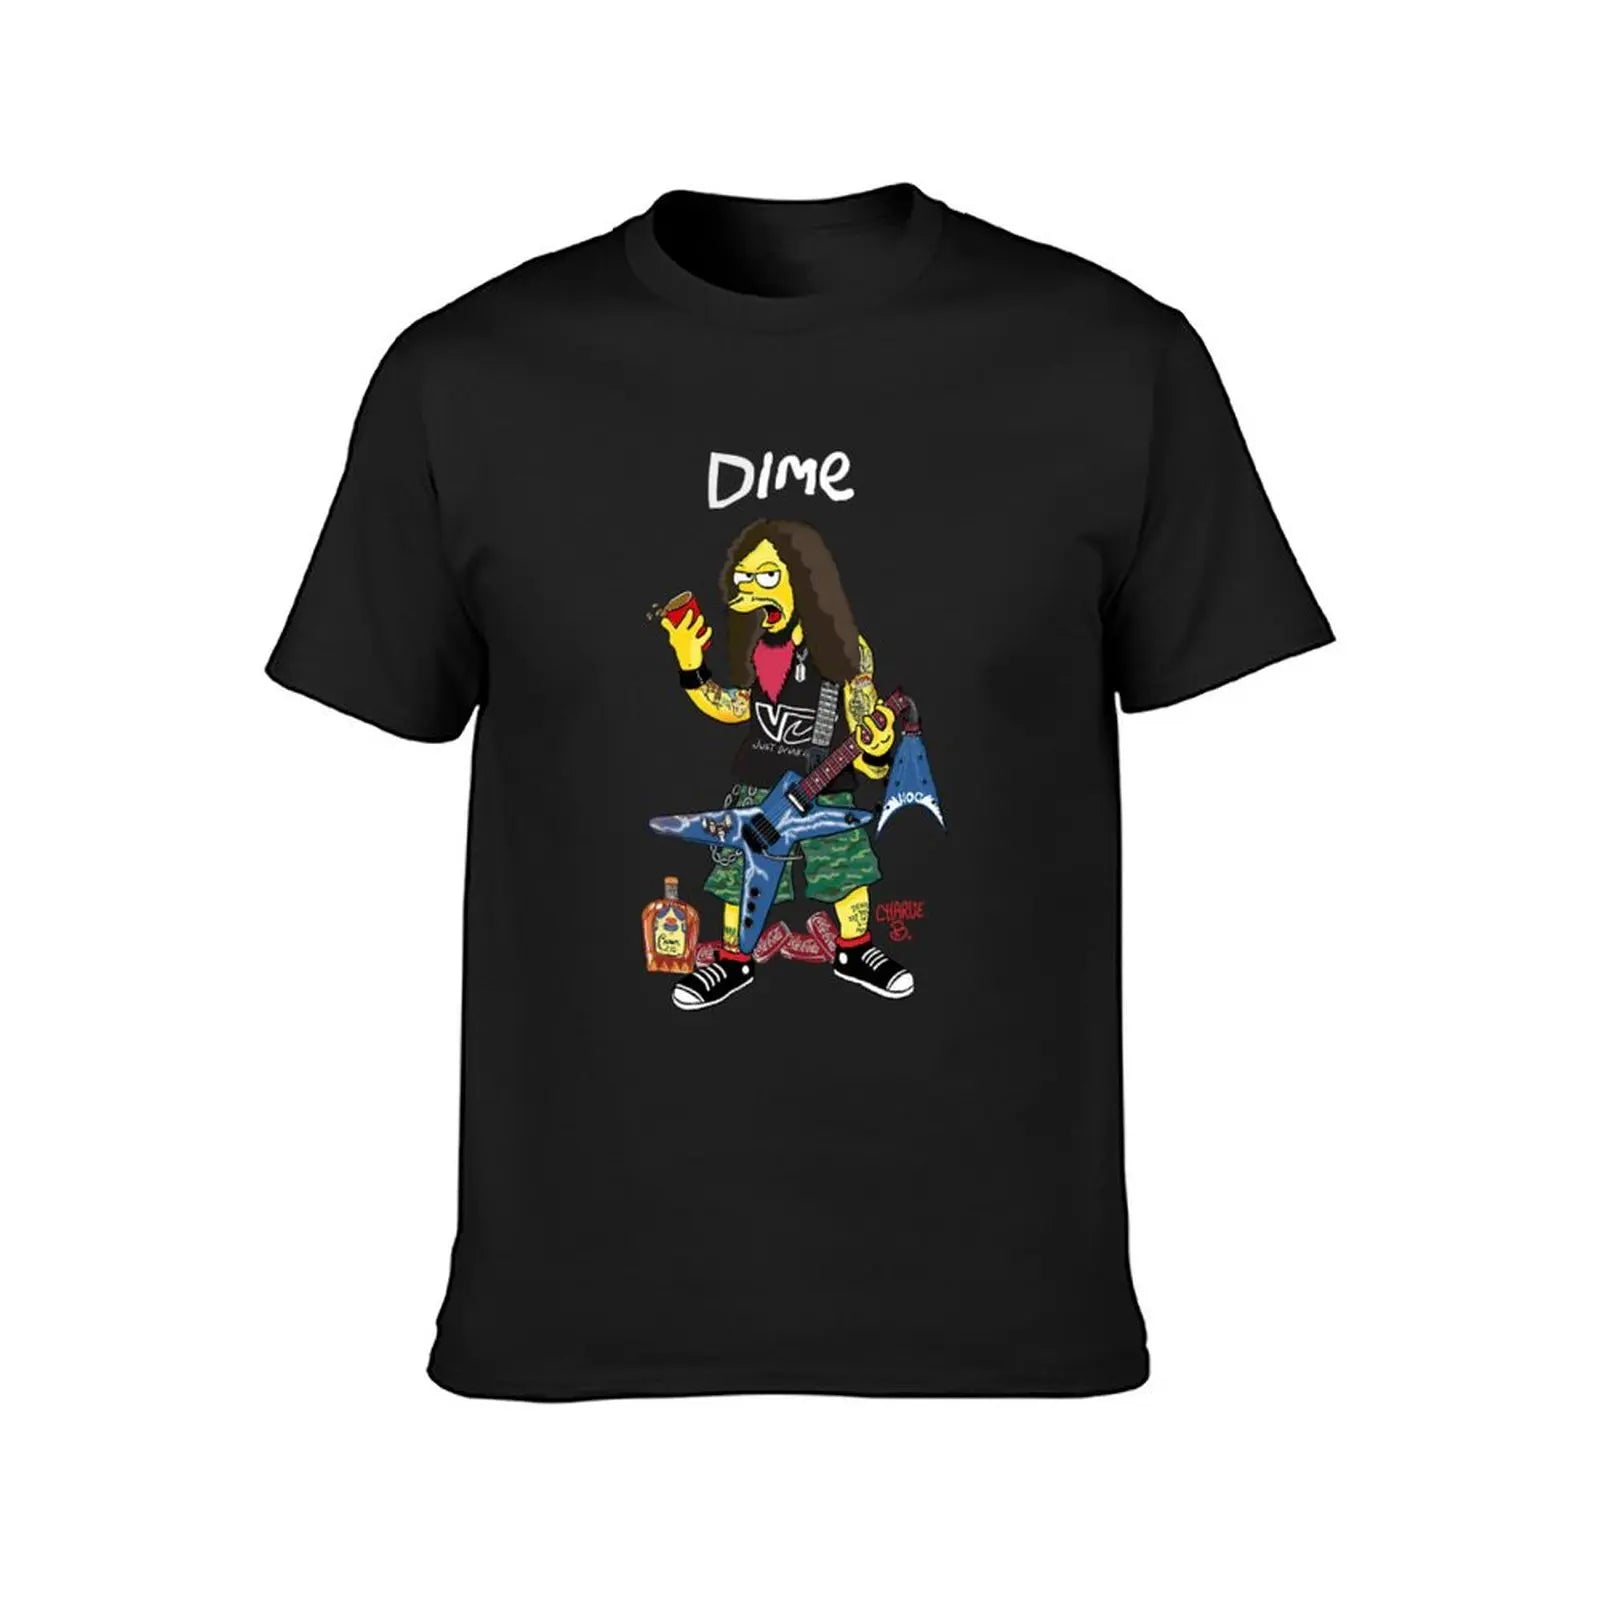 Dimebag Darrell Art -Classic T-Shirt Summer Tops Oversizeds Men's Graphic TShirts - Premium  from Lizard Vigilante - Just $24.99! Shop now at Lizard Vigilante